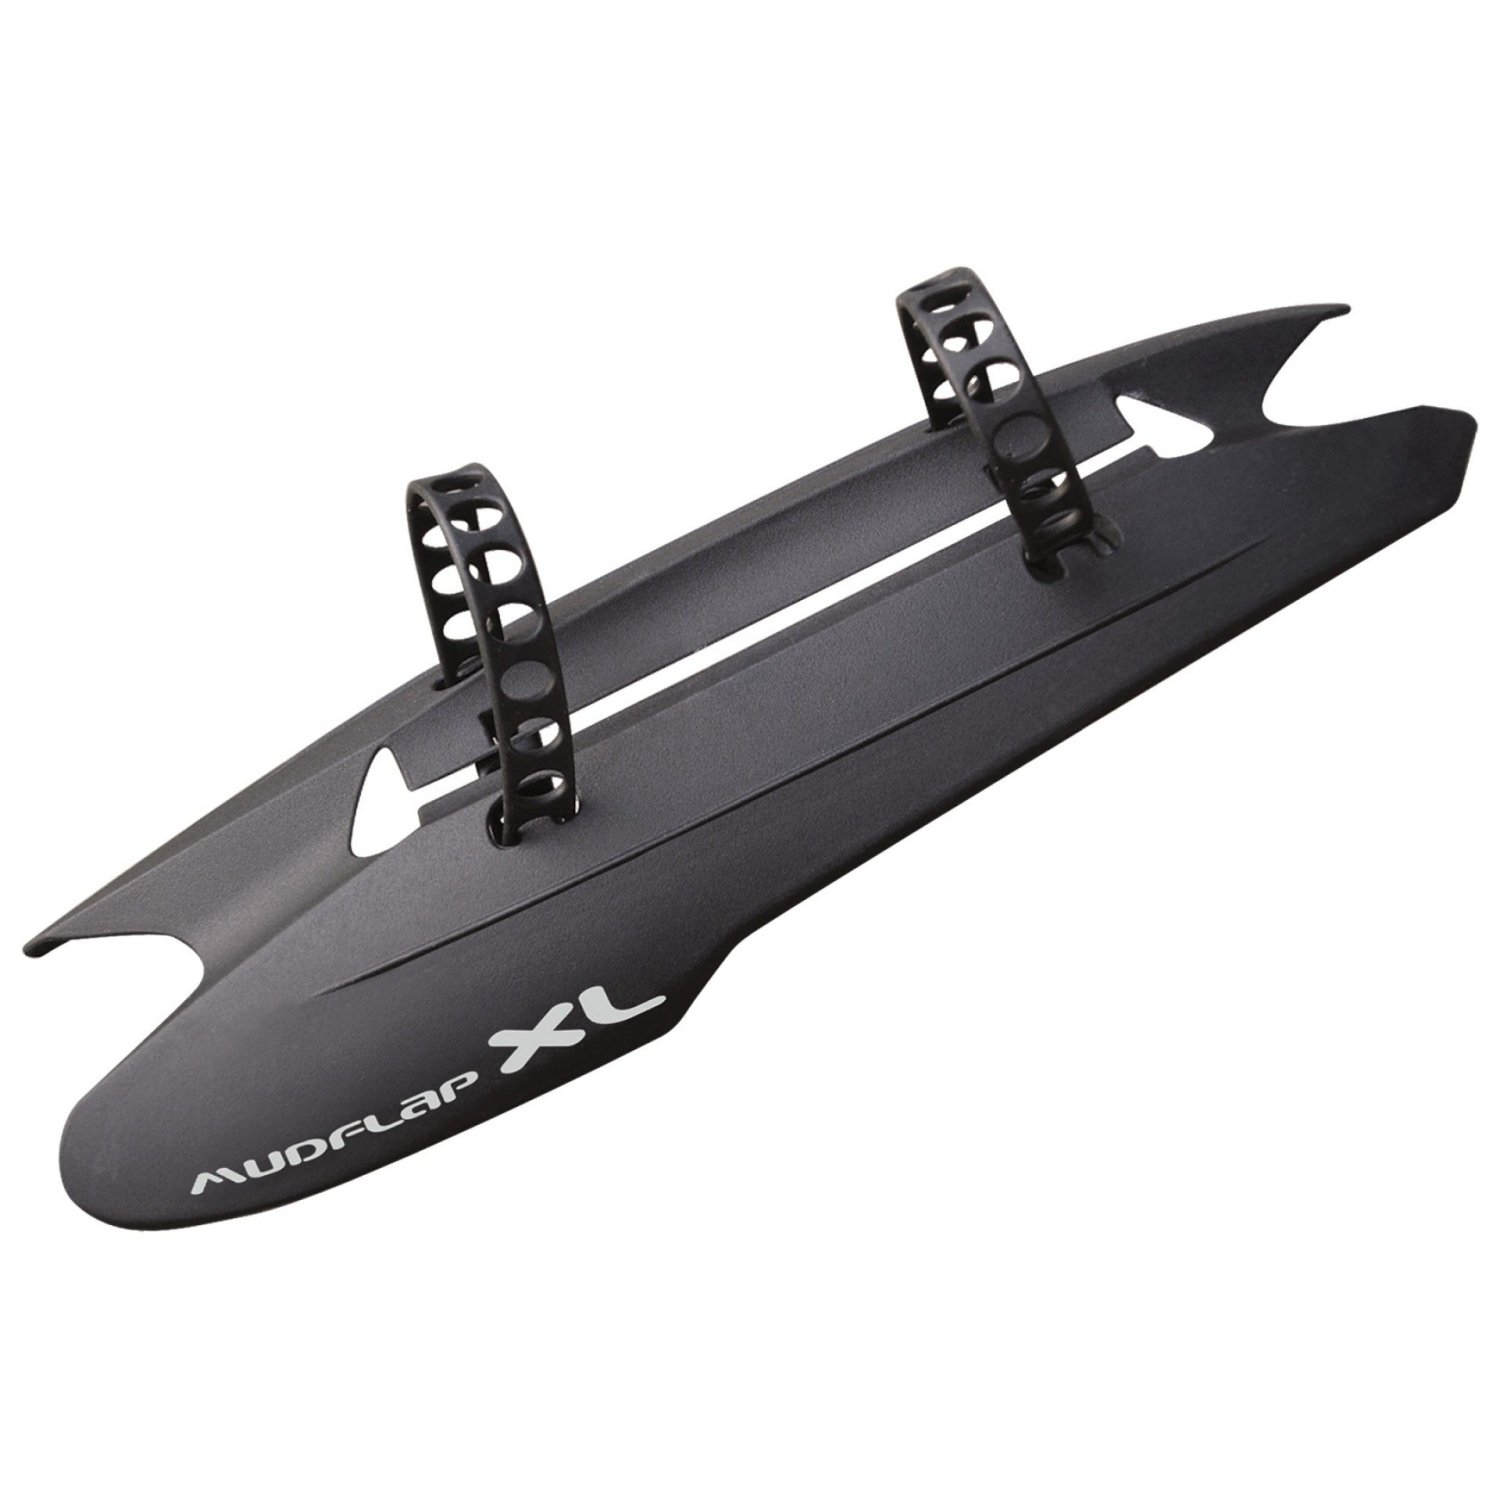 Крыло-щиток велосипедное Polisport MUDFLAP XL, переднее, универсальное, Black, PLS8627700004, размер Универсальное, цвет черные